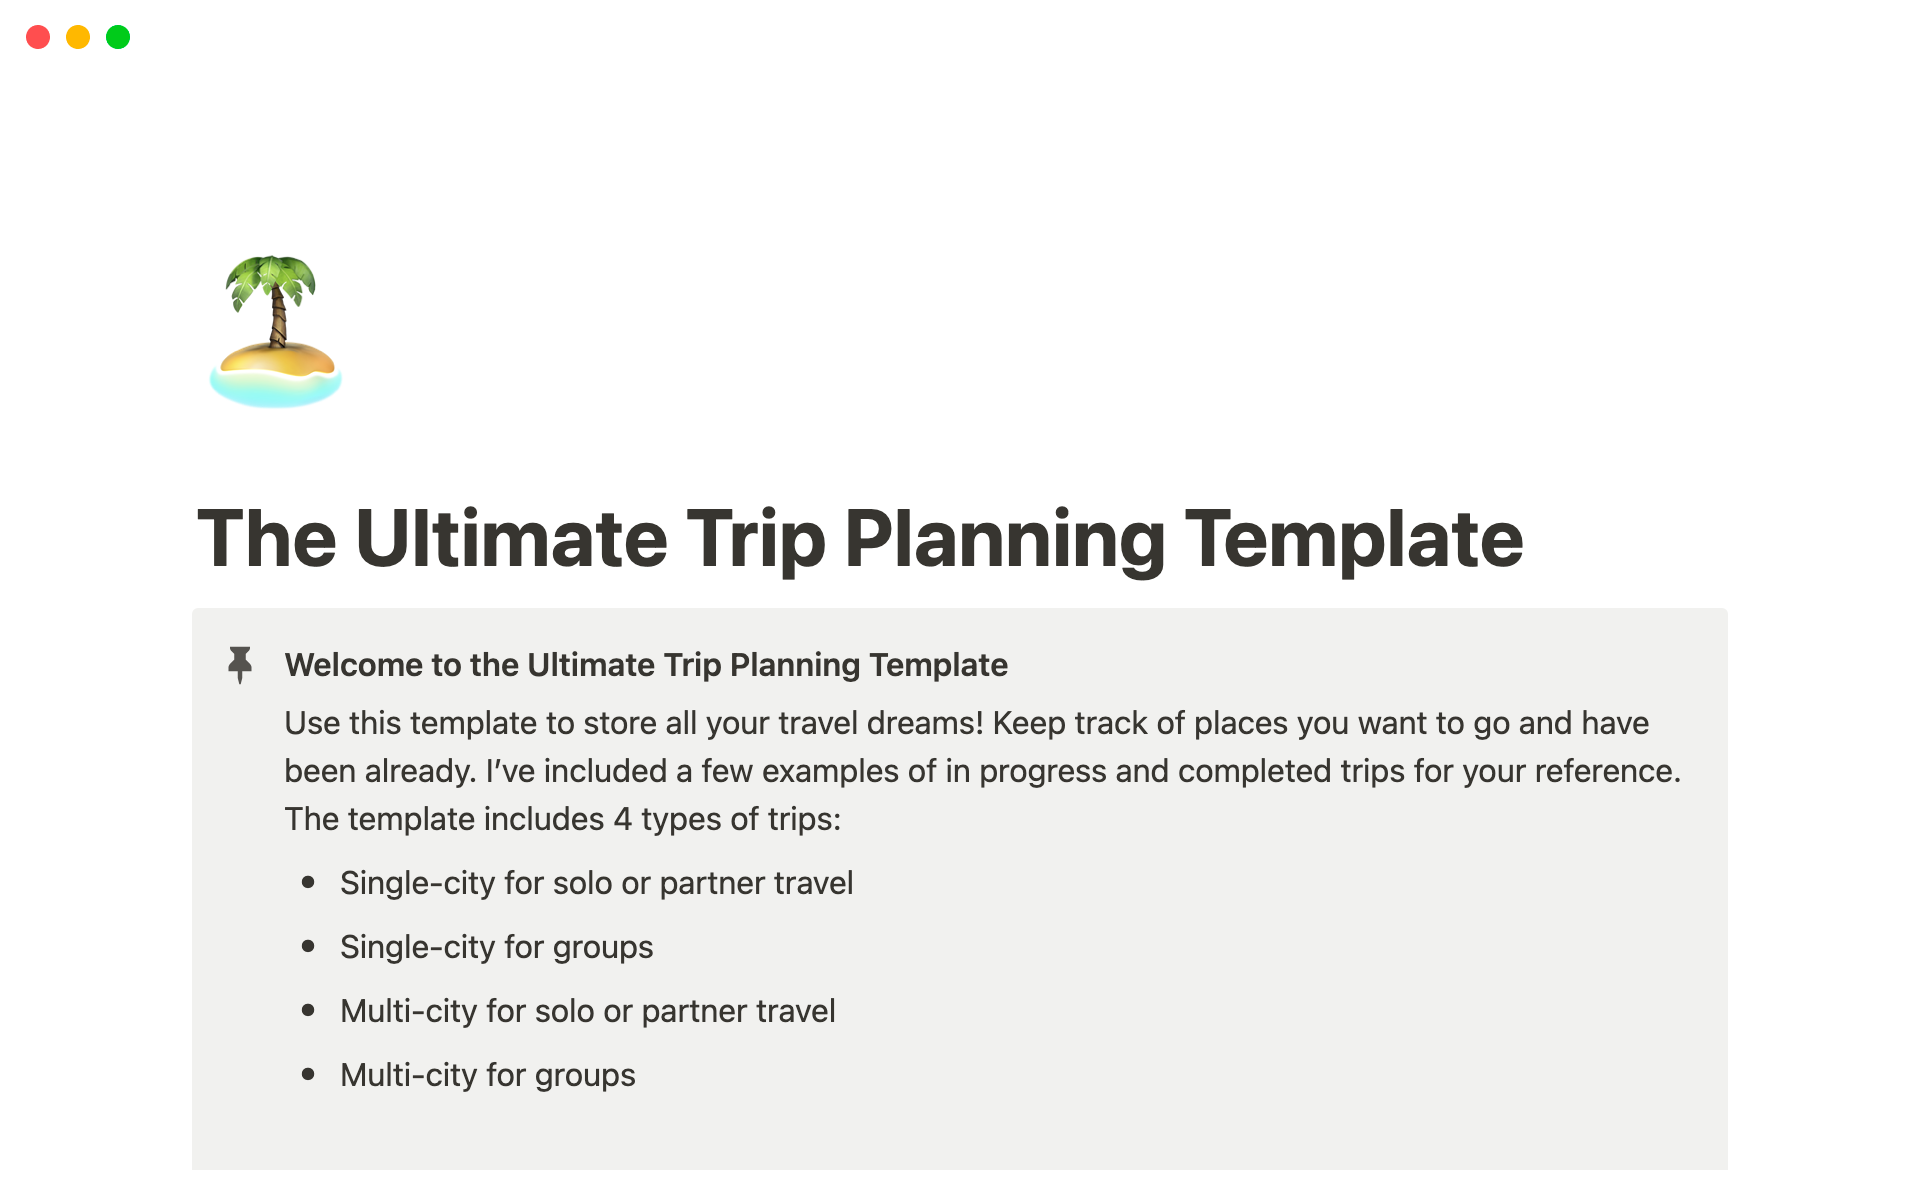 Uma prévia do modelo para The Ultimate Trip Planning Template